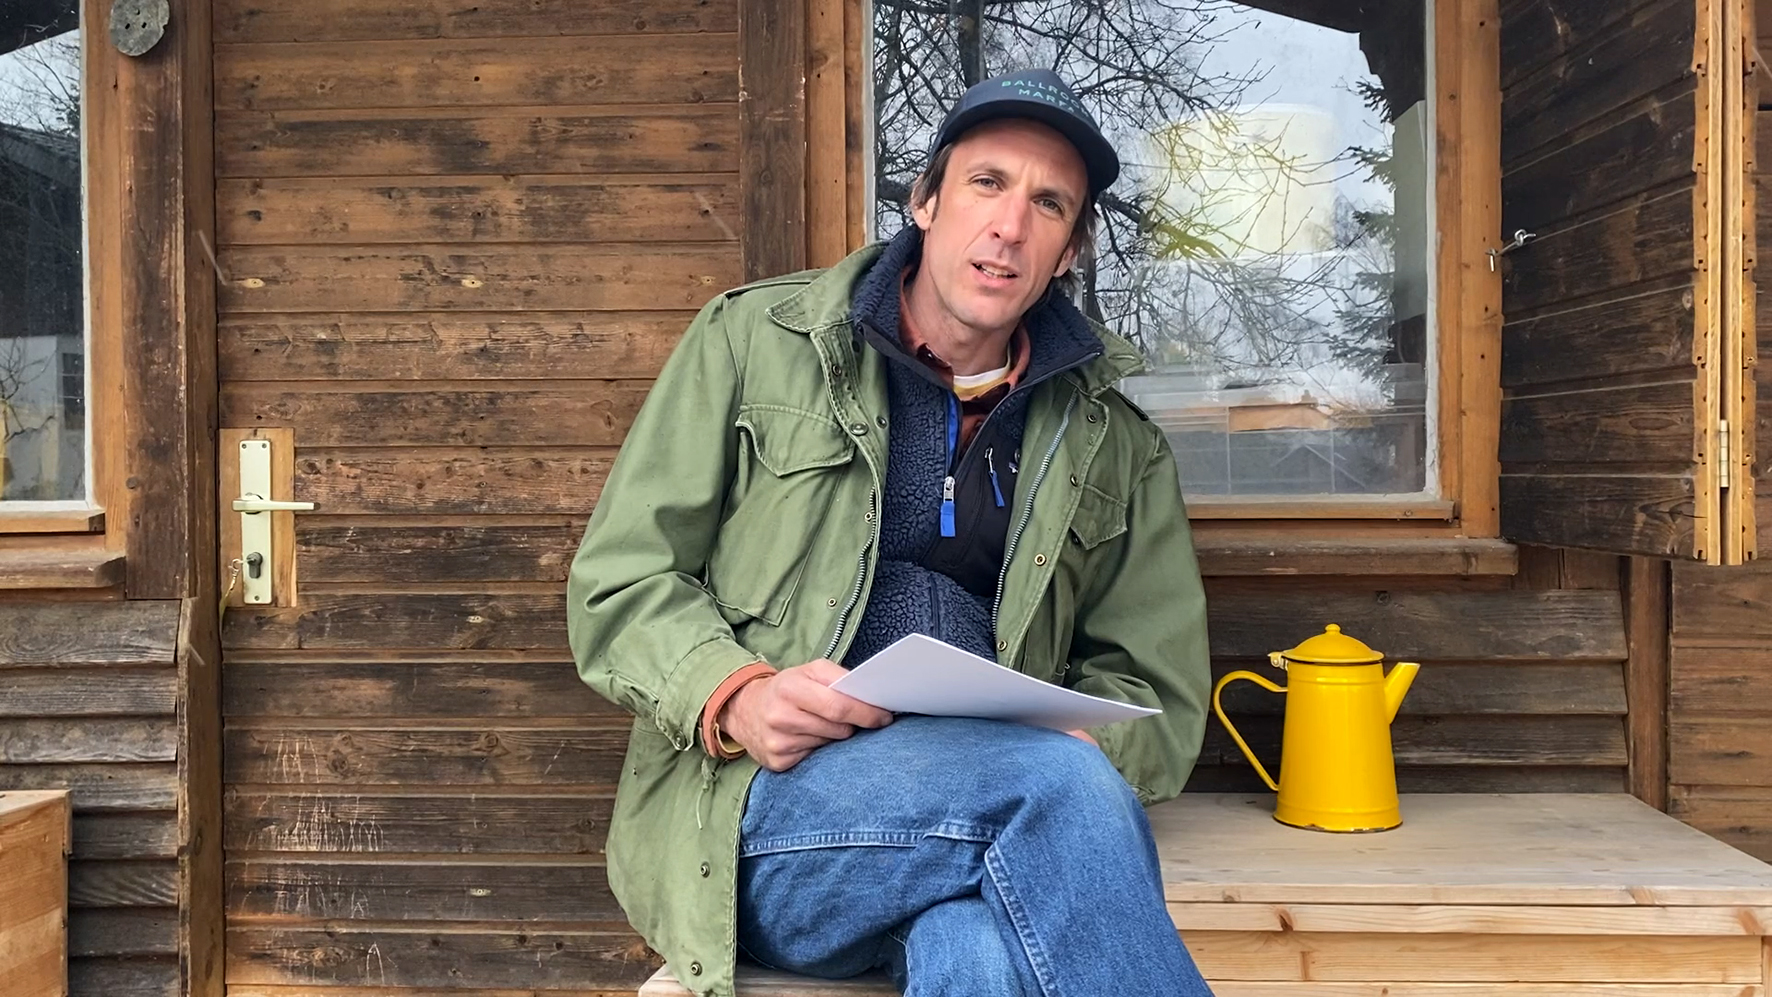 Cyrill Lachauer sitzt im Freien vor einer Holzhütte, neben ihm steht eine gelbe emaillierte Teekanne. Er hält einen Stapel Papierblätter in der Hand und Blicht in Richtung des Betrachters, der Mund halboffen, als würde er gerade sprechen. Sammlung Goetz, München